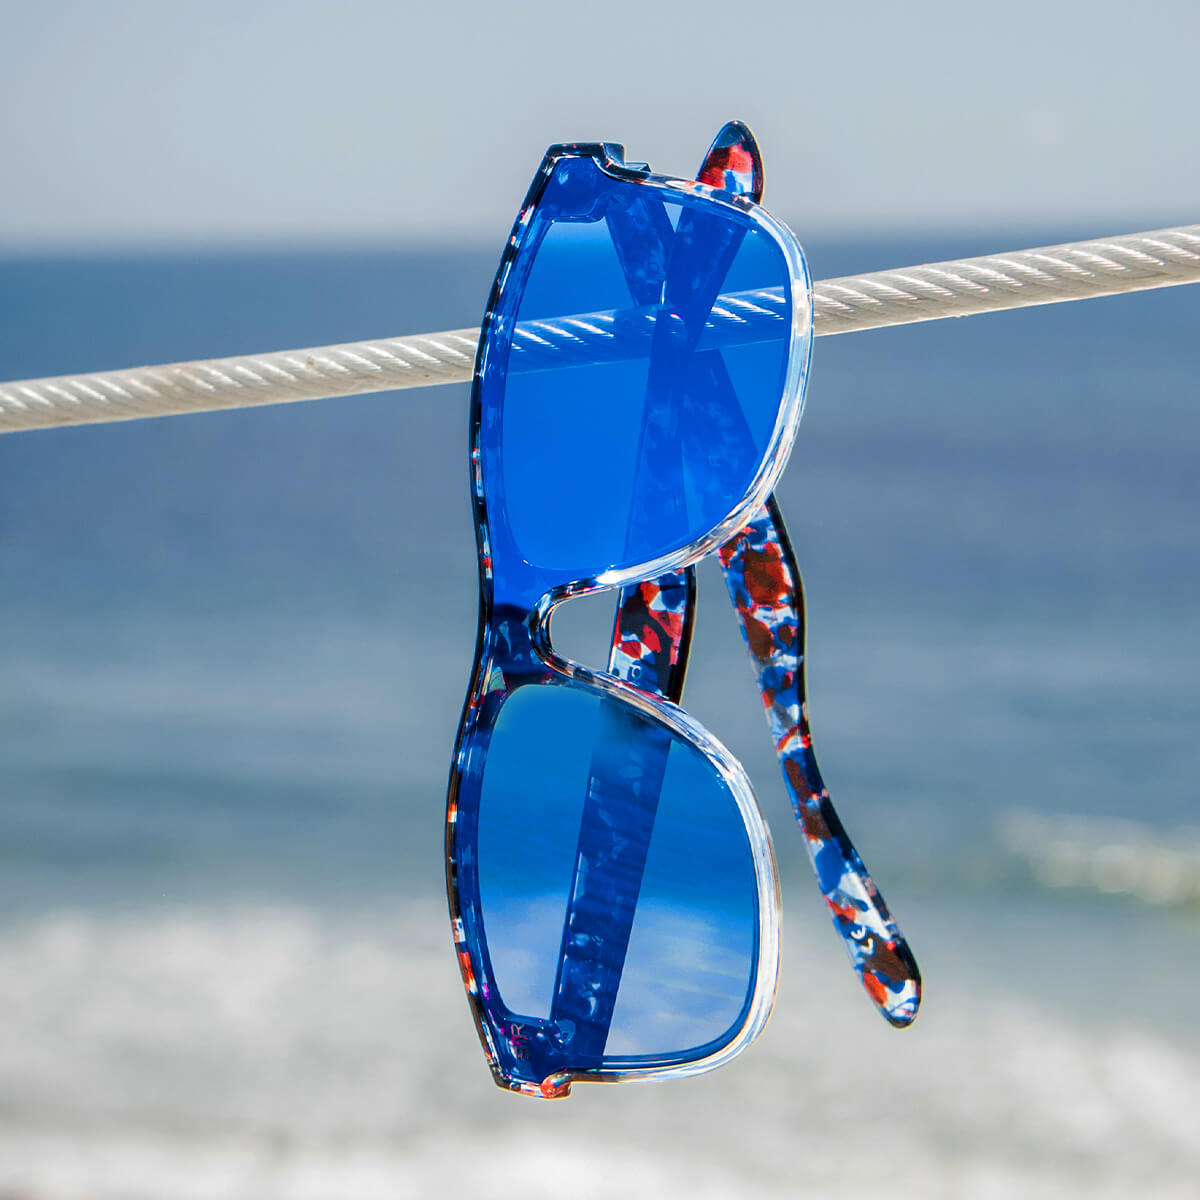 HighRise - Firecracker Polarized Highrise Shady Rays® | Polarized Sunglasses 